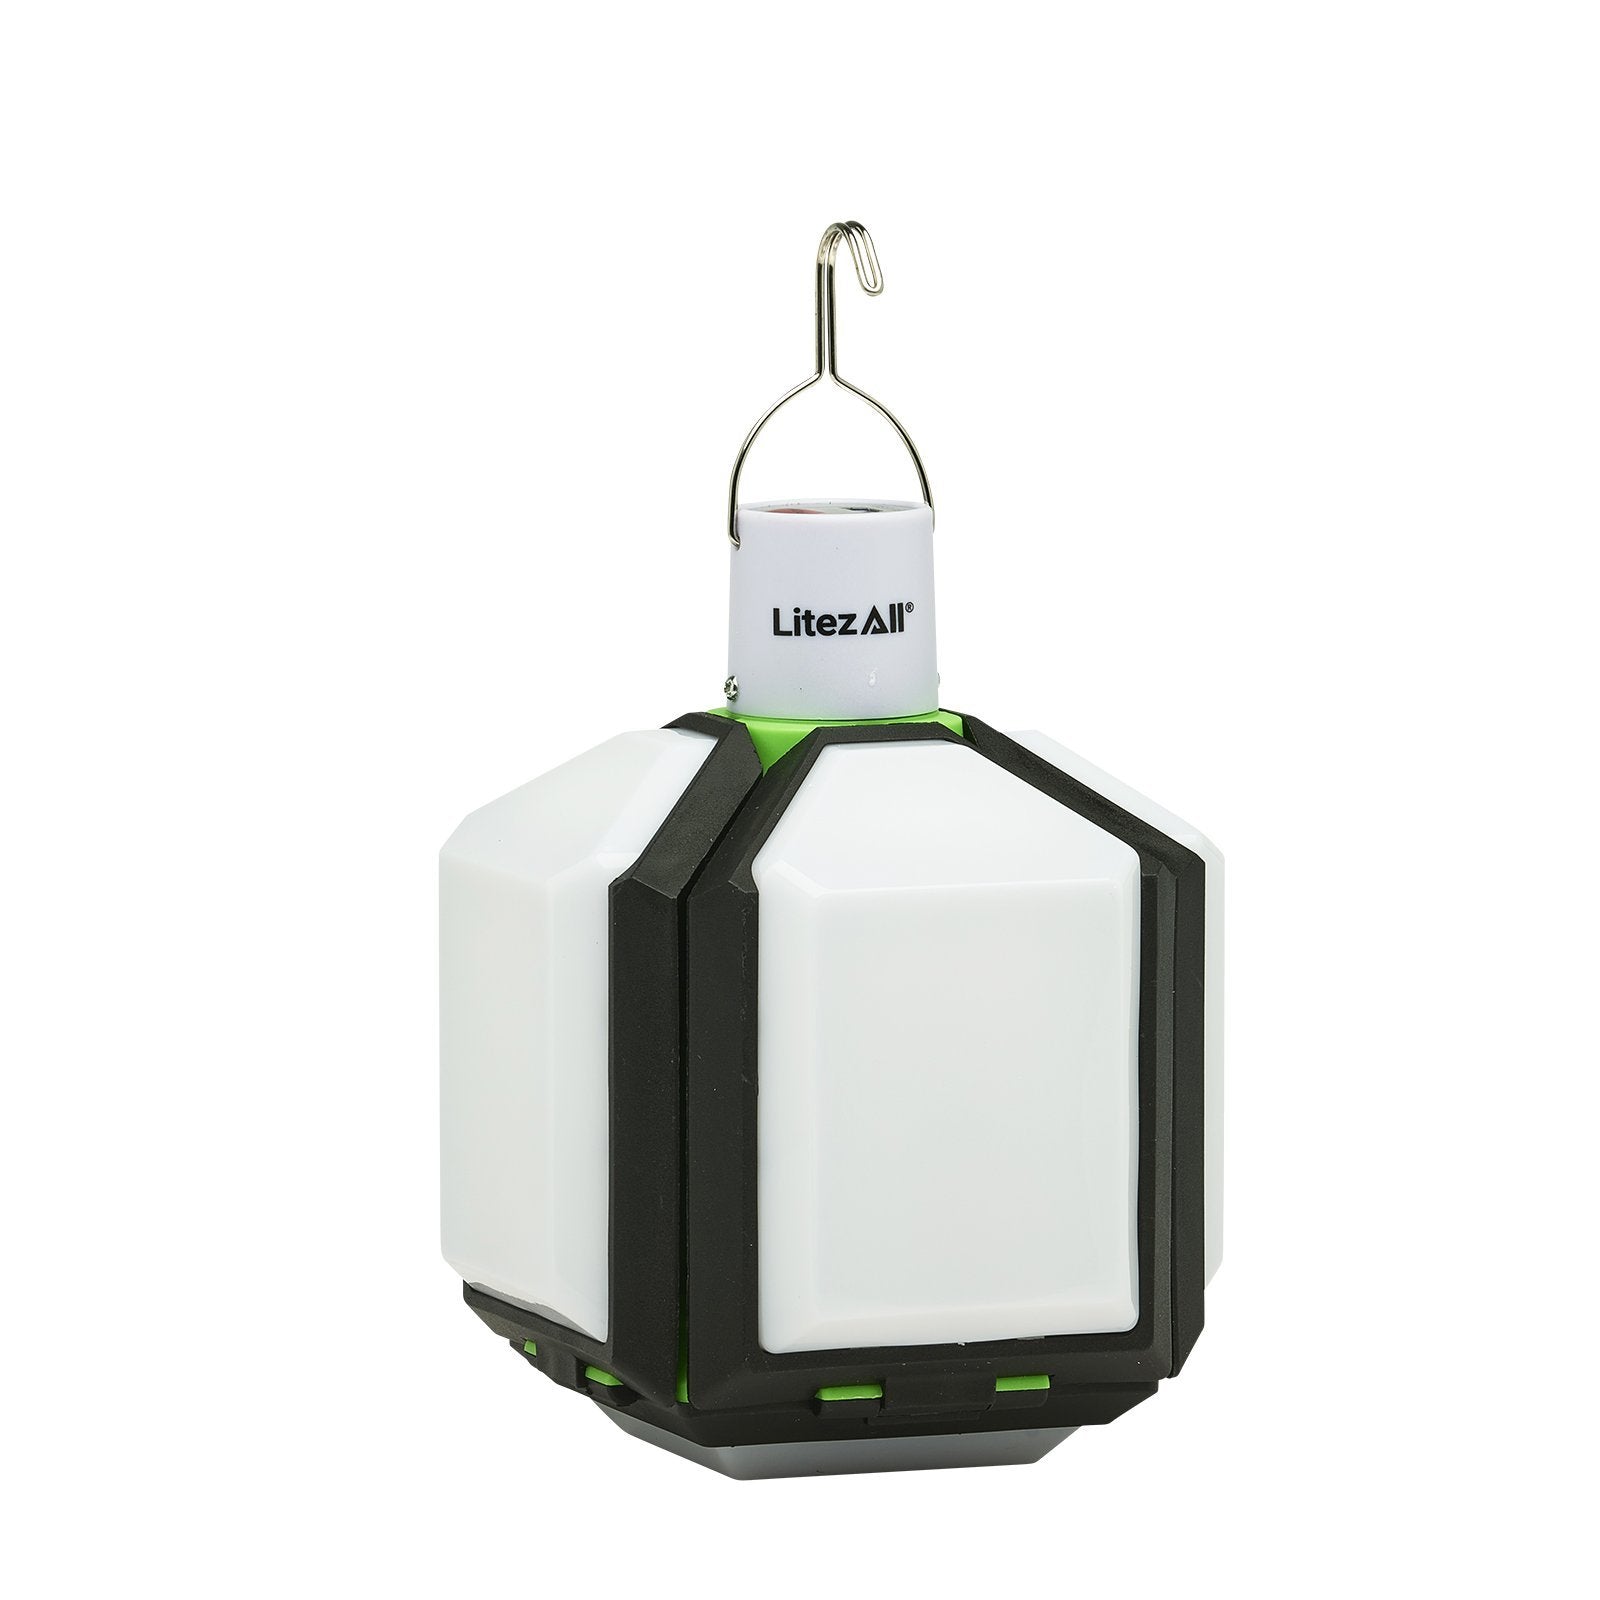 LitezAll Rechargeable Lantern with Fold-Out Panels - LitezAll - Lanterns - 53